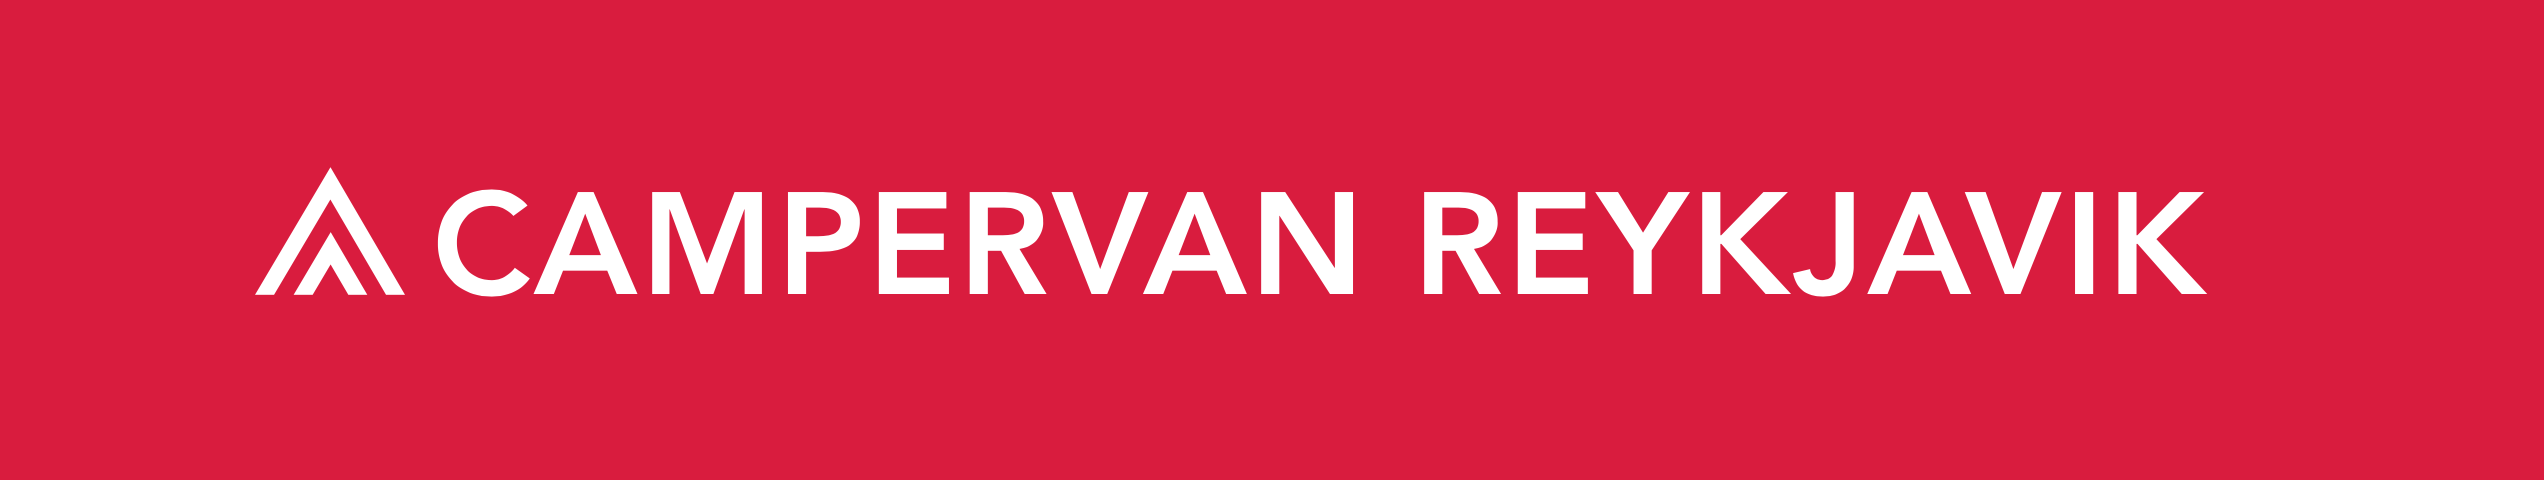 Campervan Reykjavik Logo